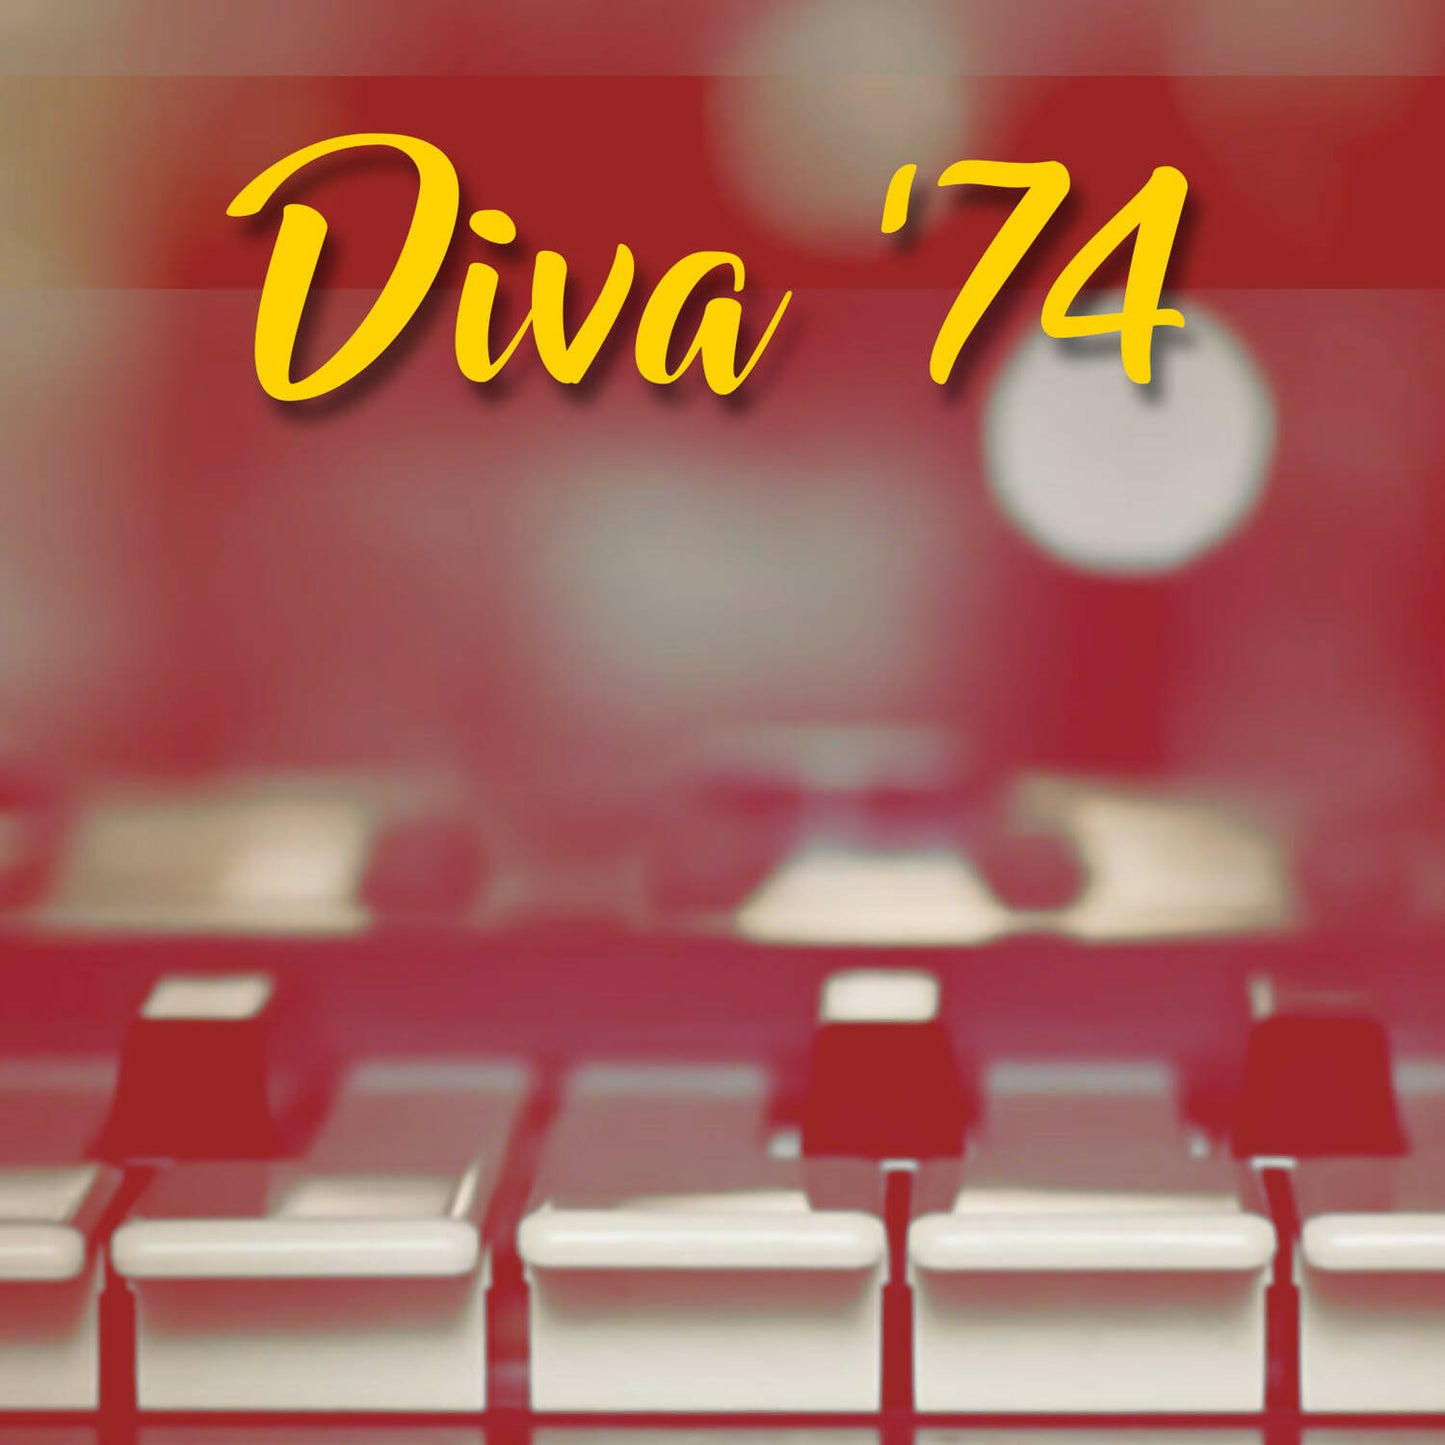 Diva - Diva'74